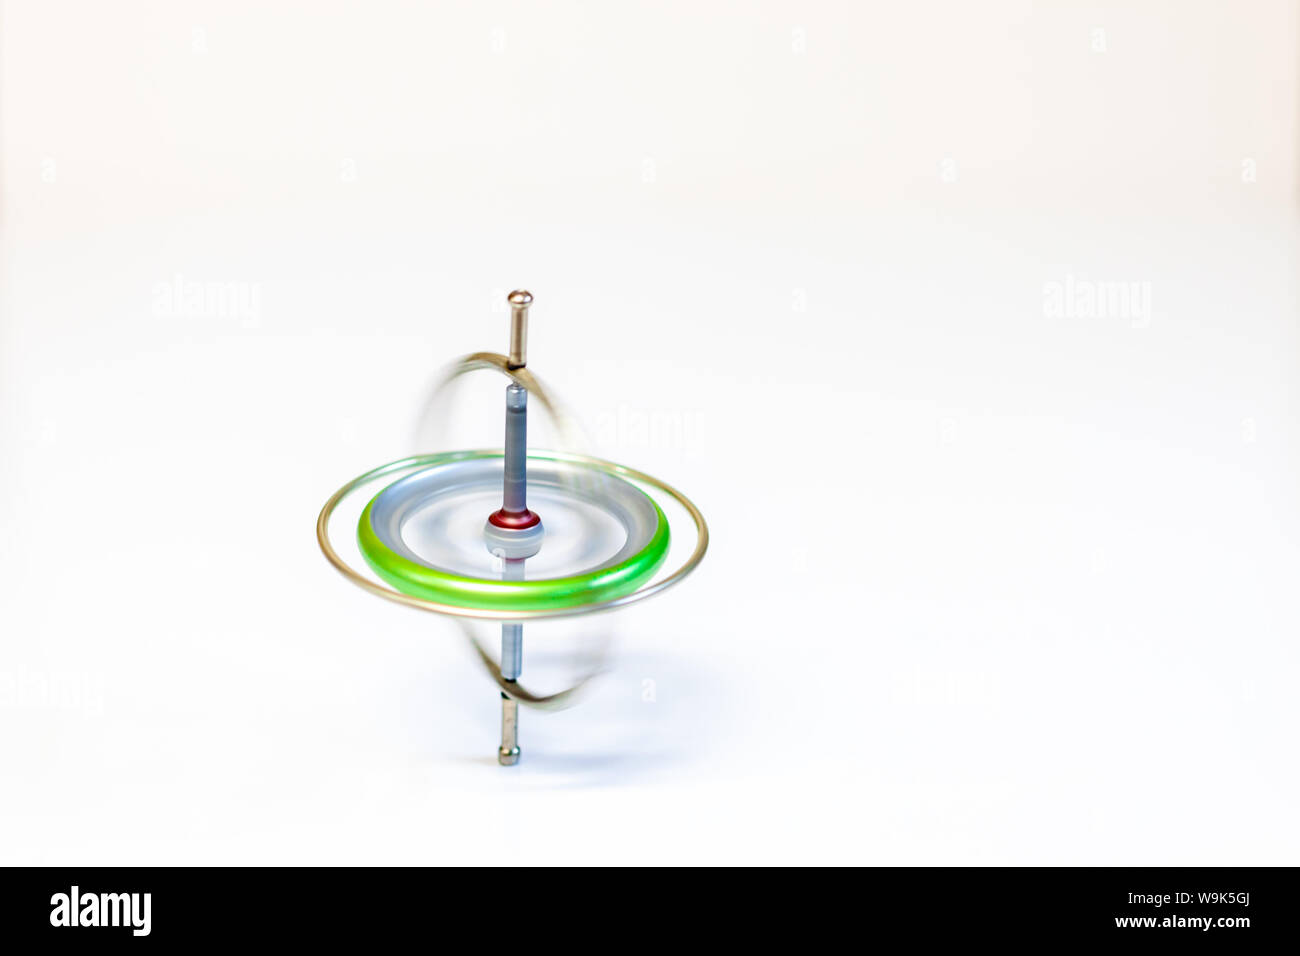 Un juguete de metal hilado giroscopio aislado sobre un fondo blanco. Foto de stock